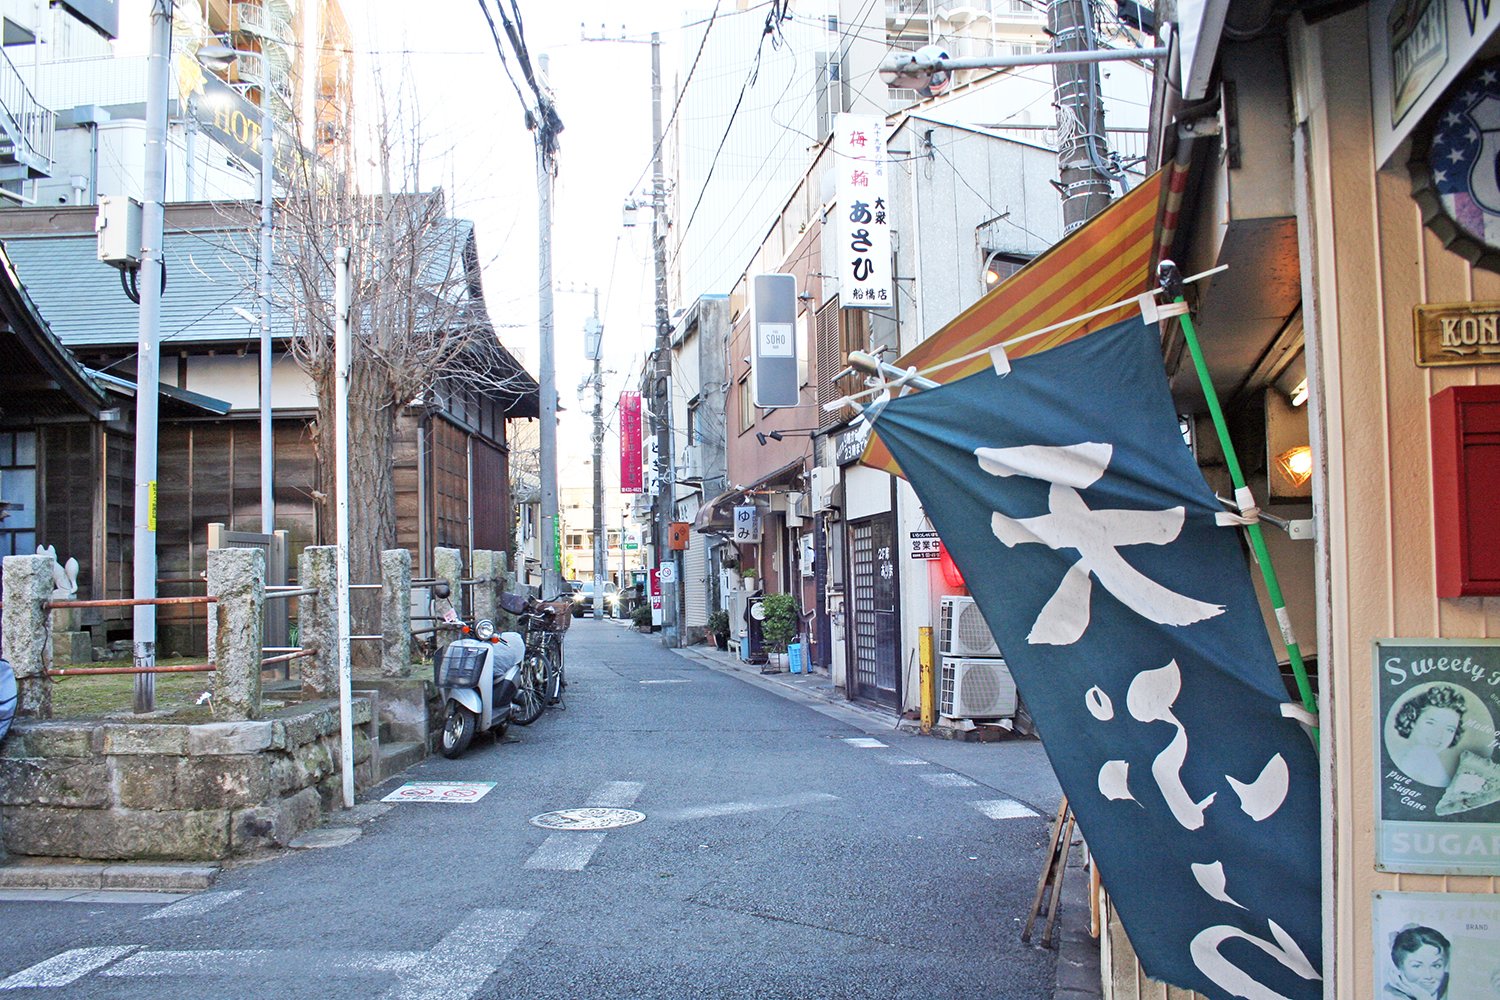 昔の日本映画のワンシーンに迷い込んだ気分になる路地裏感満載のこの通りの先に『SUNNY DROP』がある。